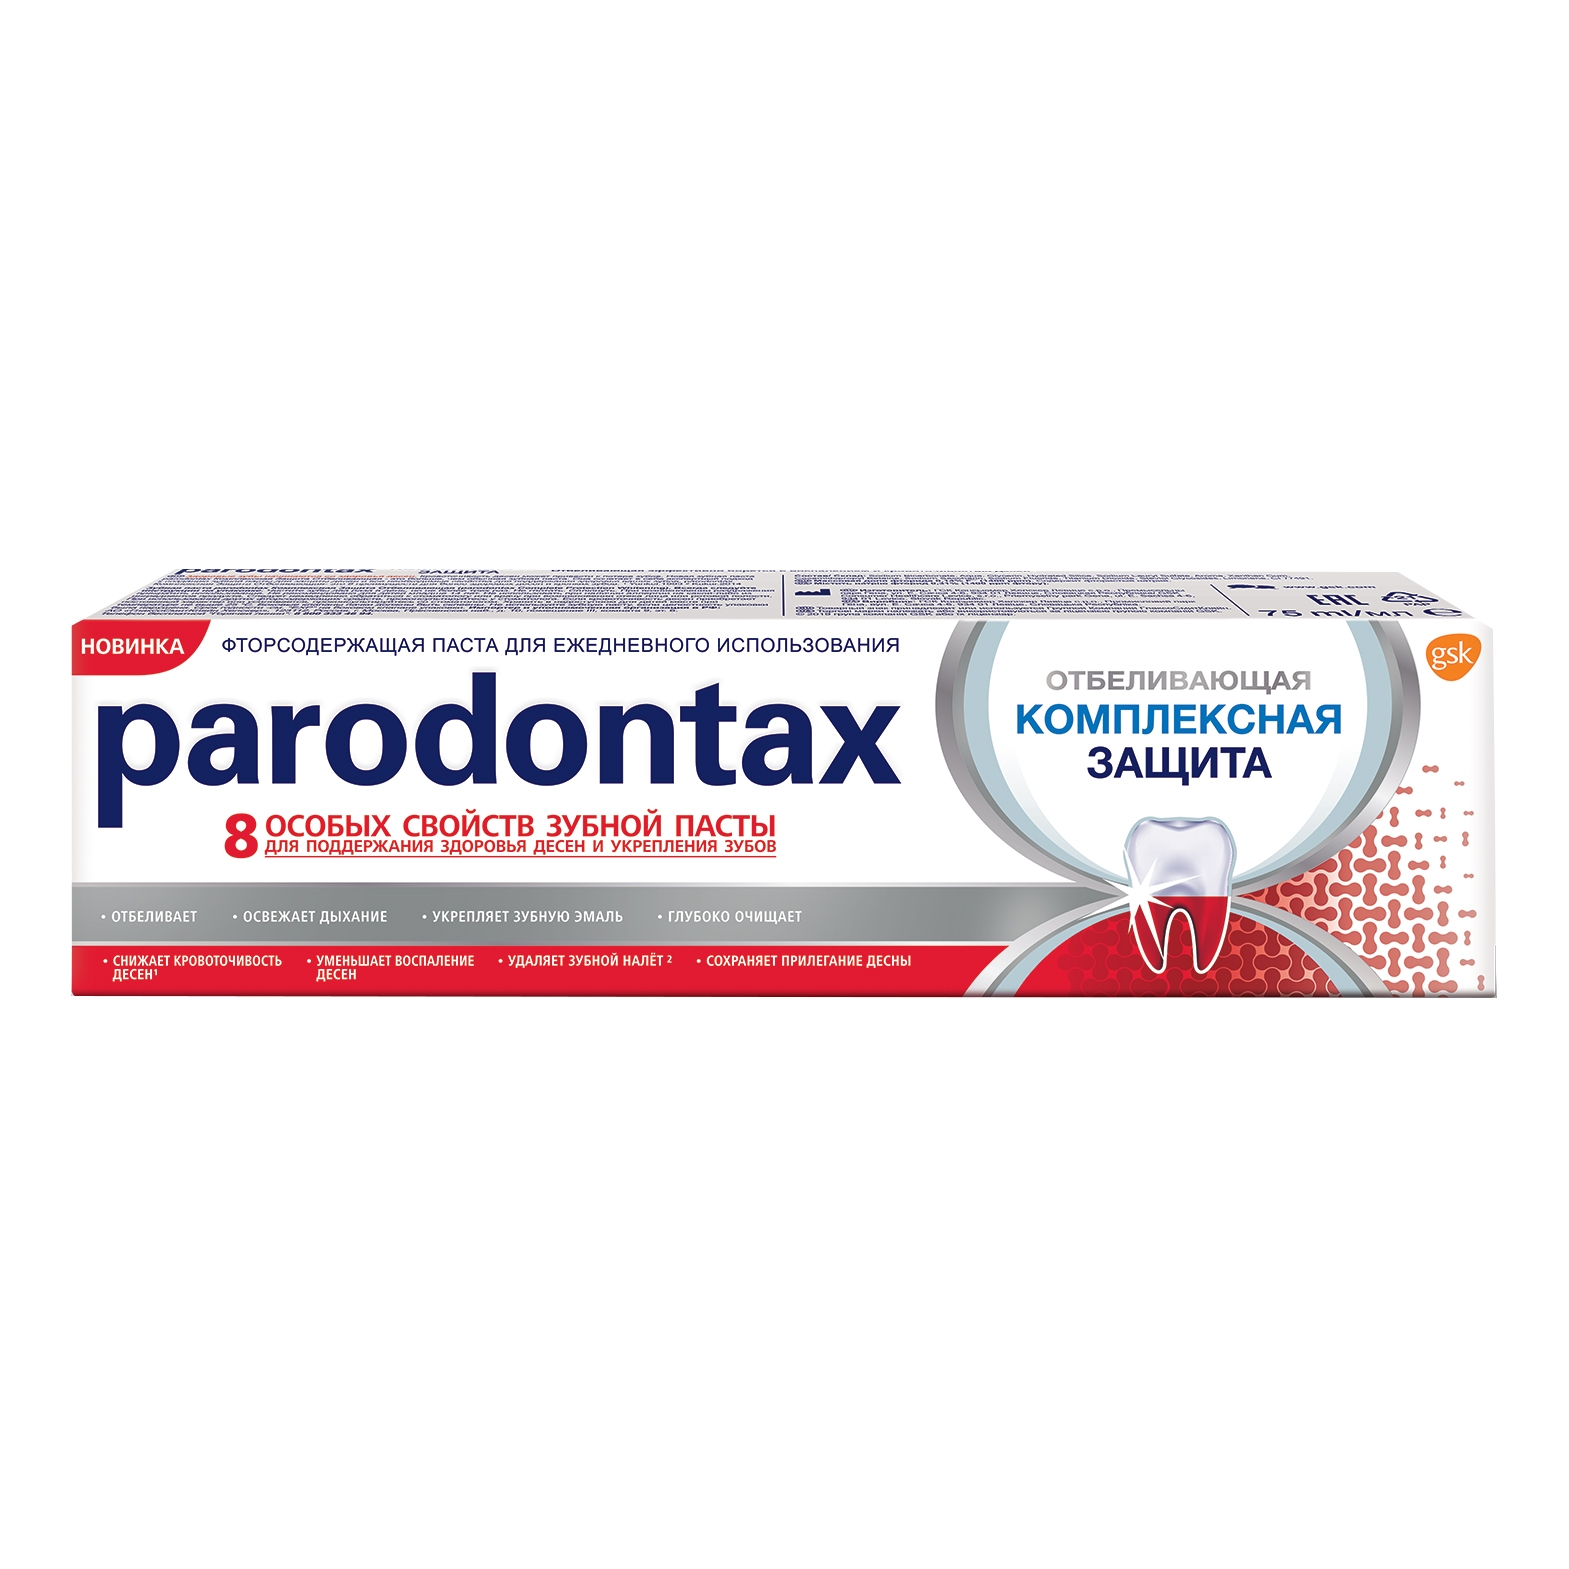 Зубная паста Parodontax Комплексная защита и отбеливание 75 мл зубная паста paradontax комплексная защита экстра свежесть 75 мл